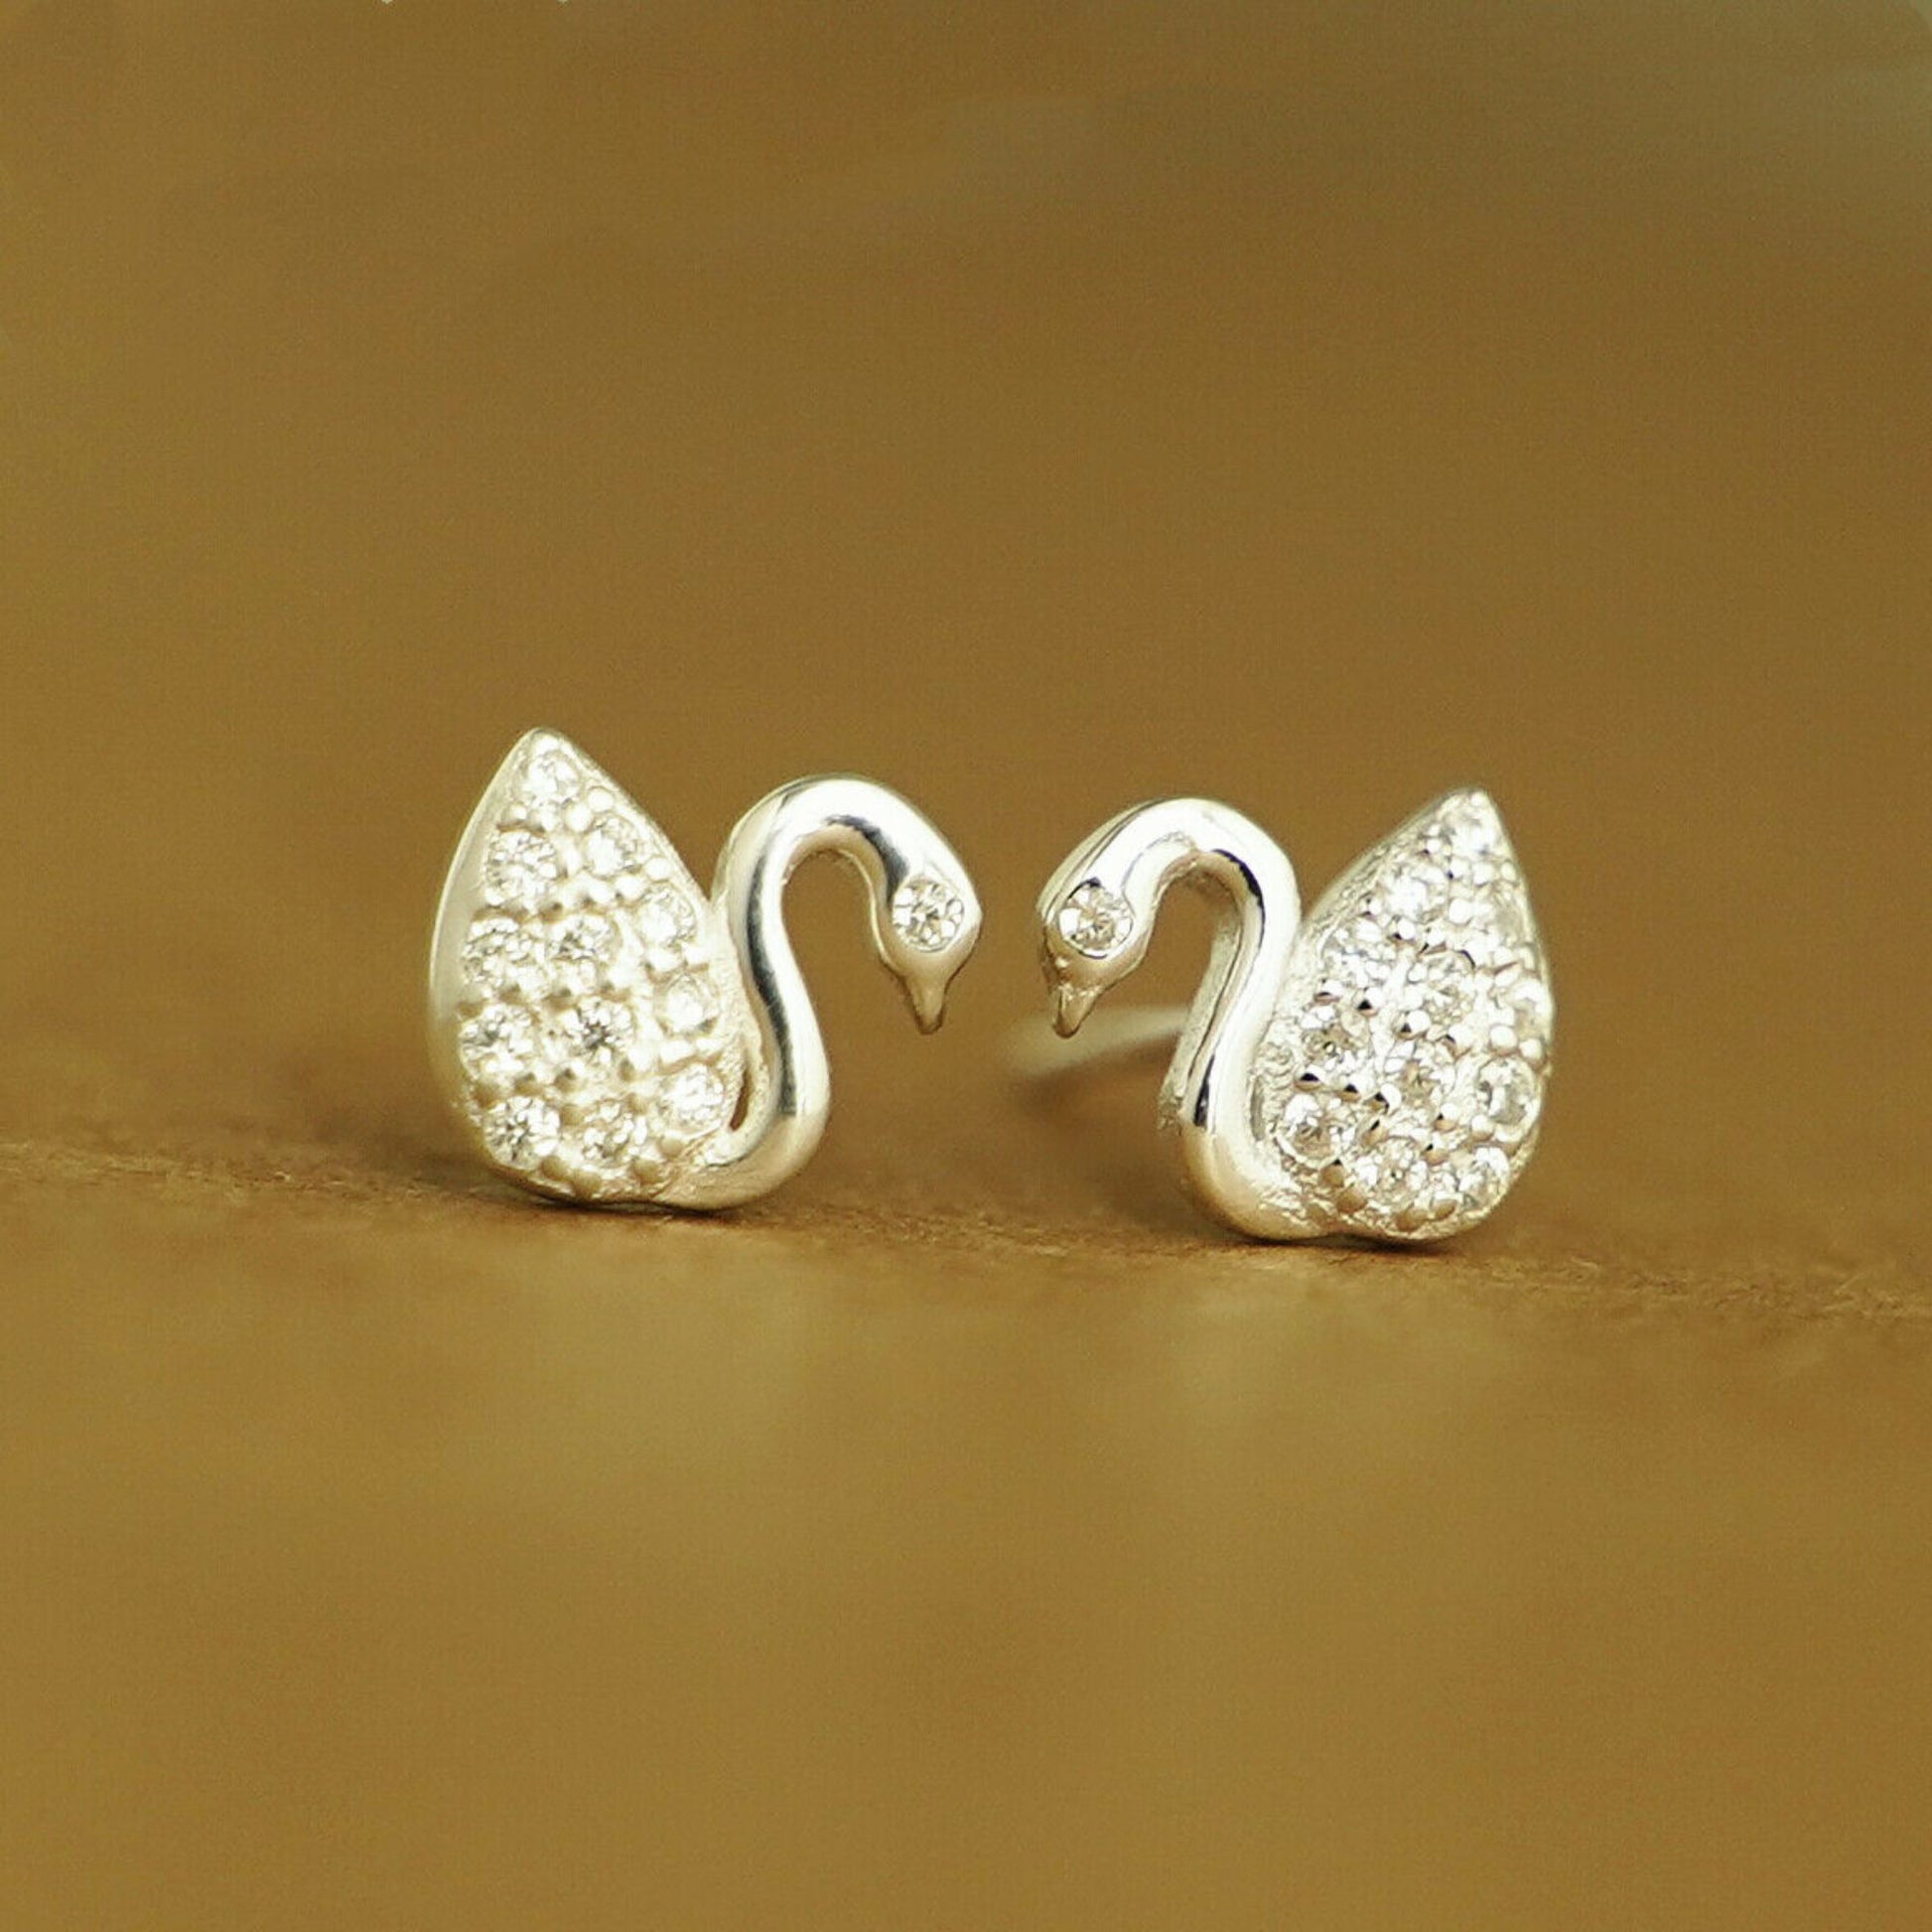 925 Sterling Silver Swan Stud Earrings with Paved CZ - sugarkittenlondon